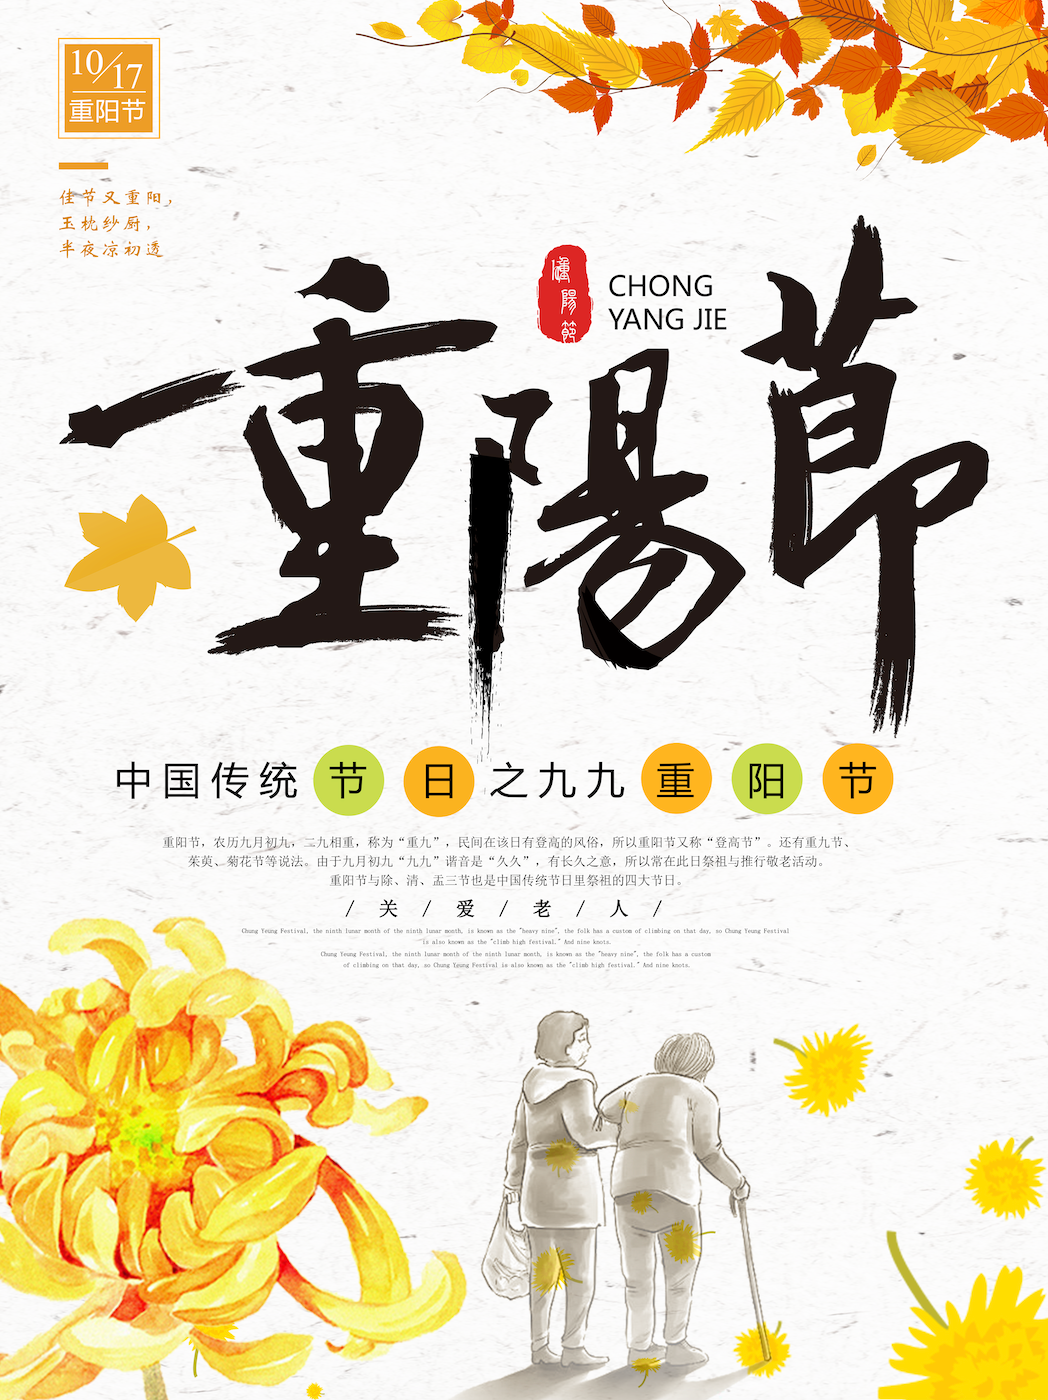 2018年重阳节的广告海报。这一天是中国阴历的九月九日；海报左上角的时间显示，2018年的重阳节是阳历的10月17日